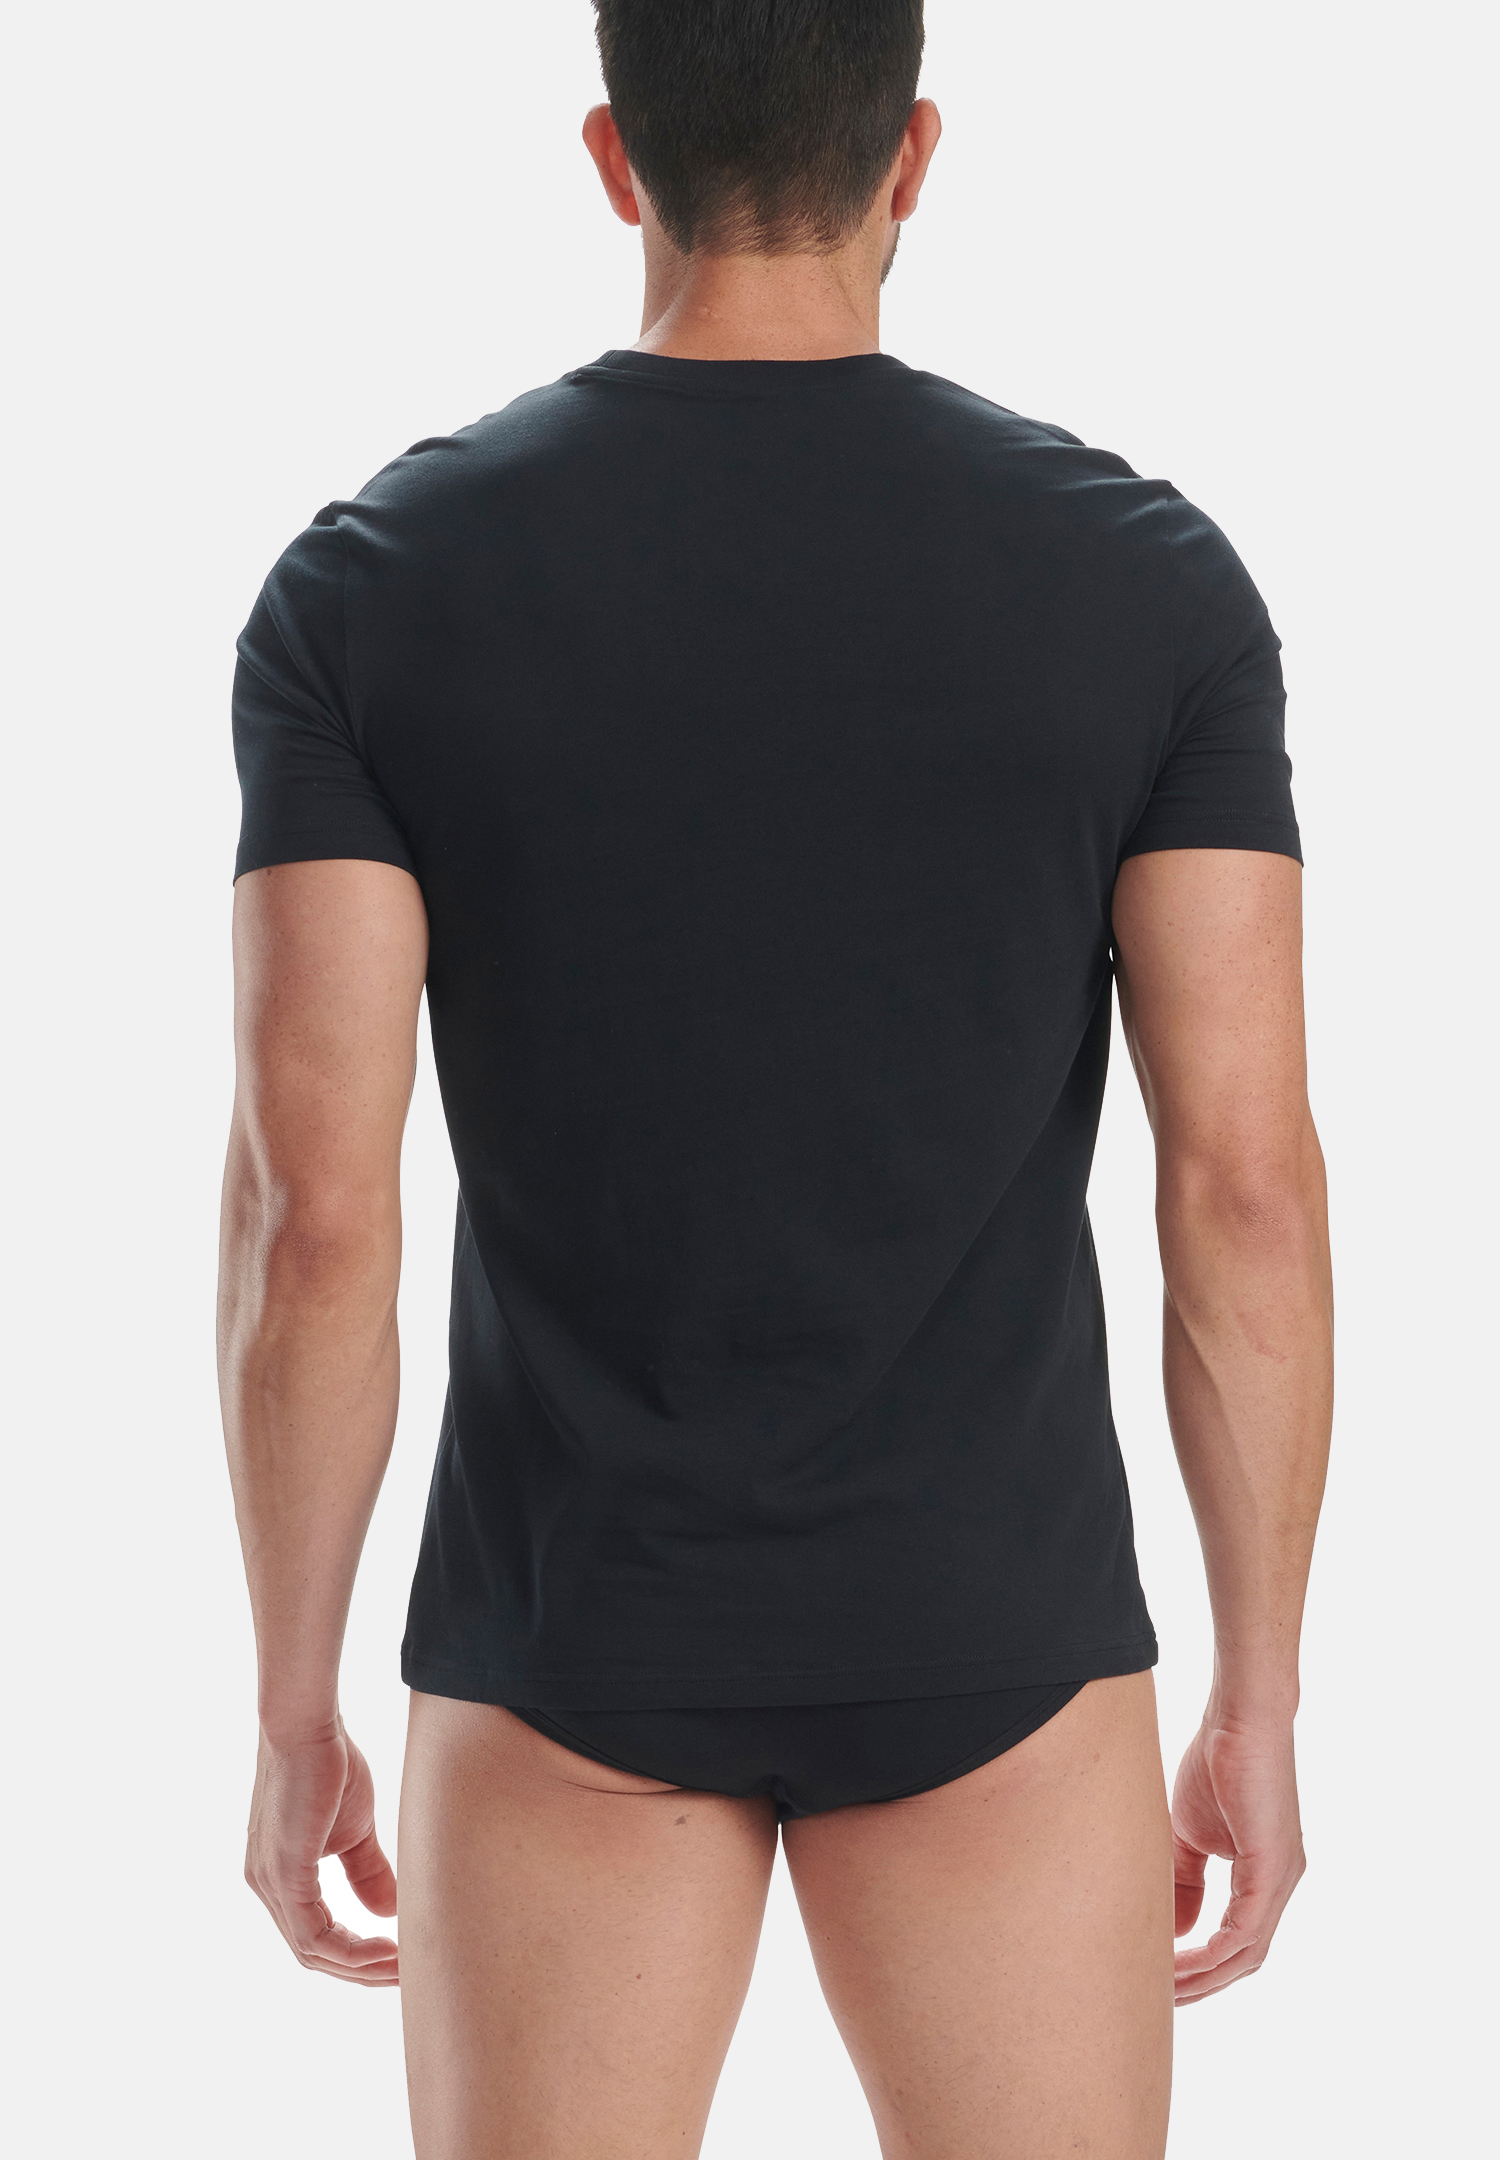 MULTIPACK 8er PACK adidas Crew Neck T-Shirt Herren Unterhemd Rund Ausschnitt langlebig 8er Pack 